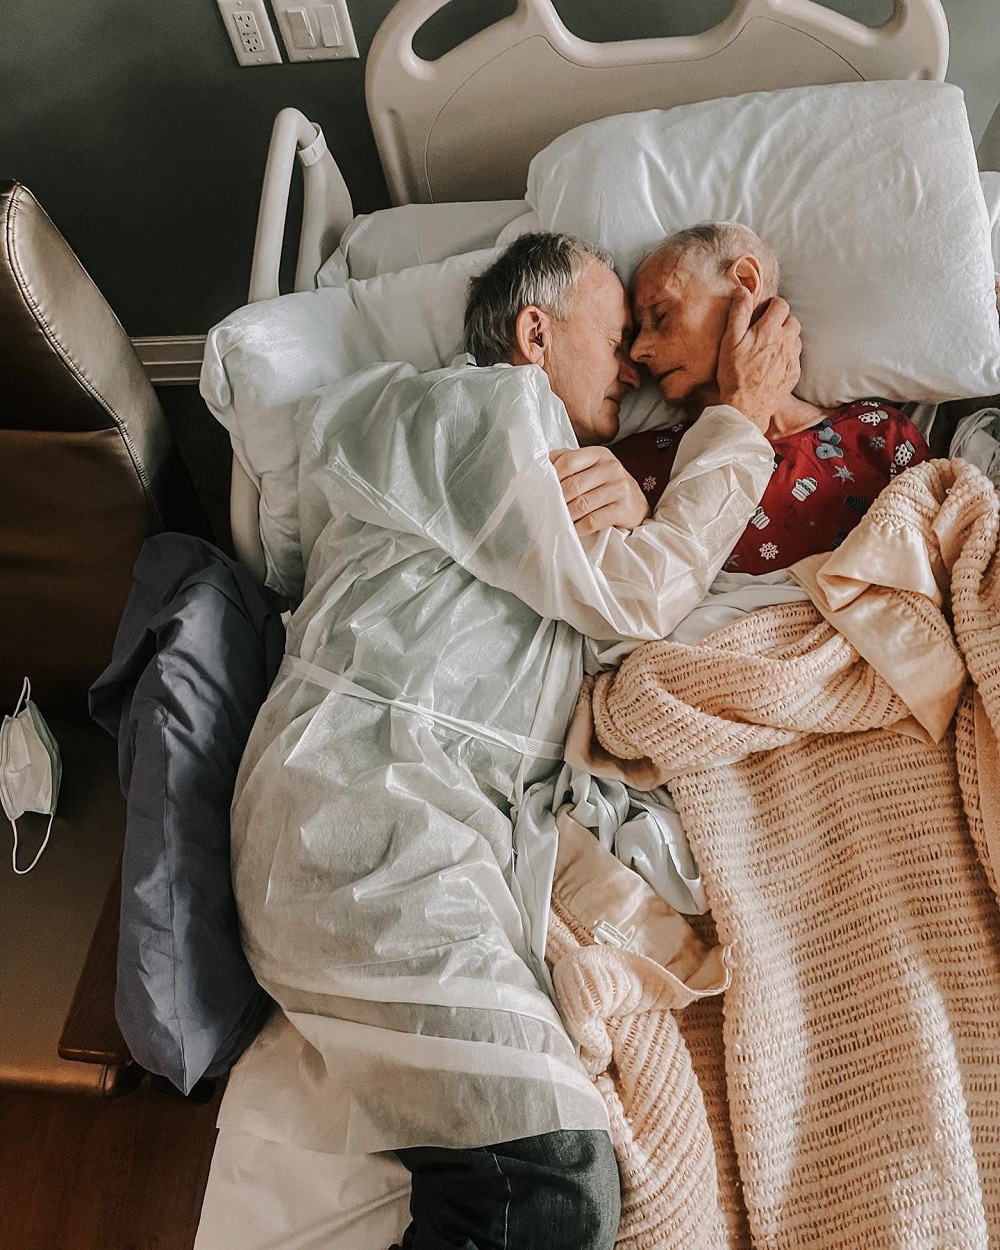 Bunicul și bunica, protagoniștii poveștii de iubire, ținându-se în brațe pe patul de spital.